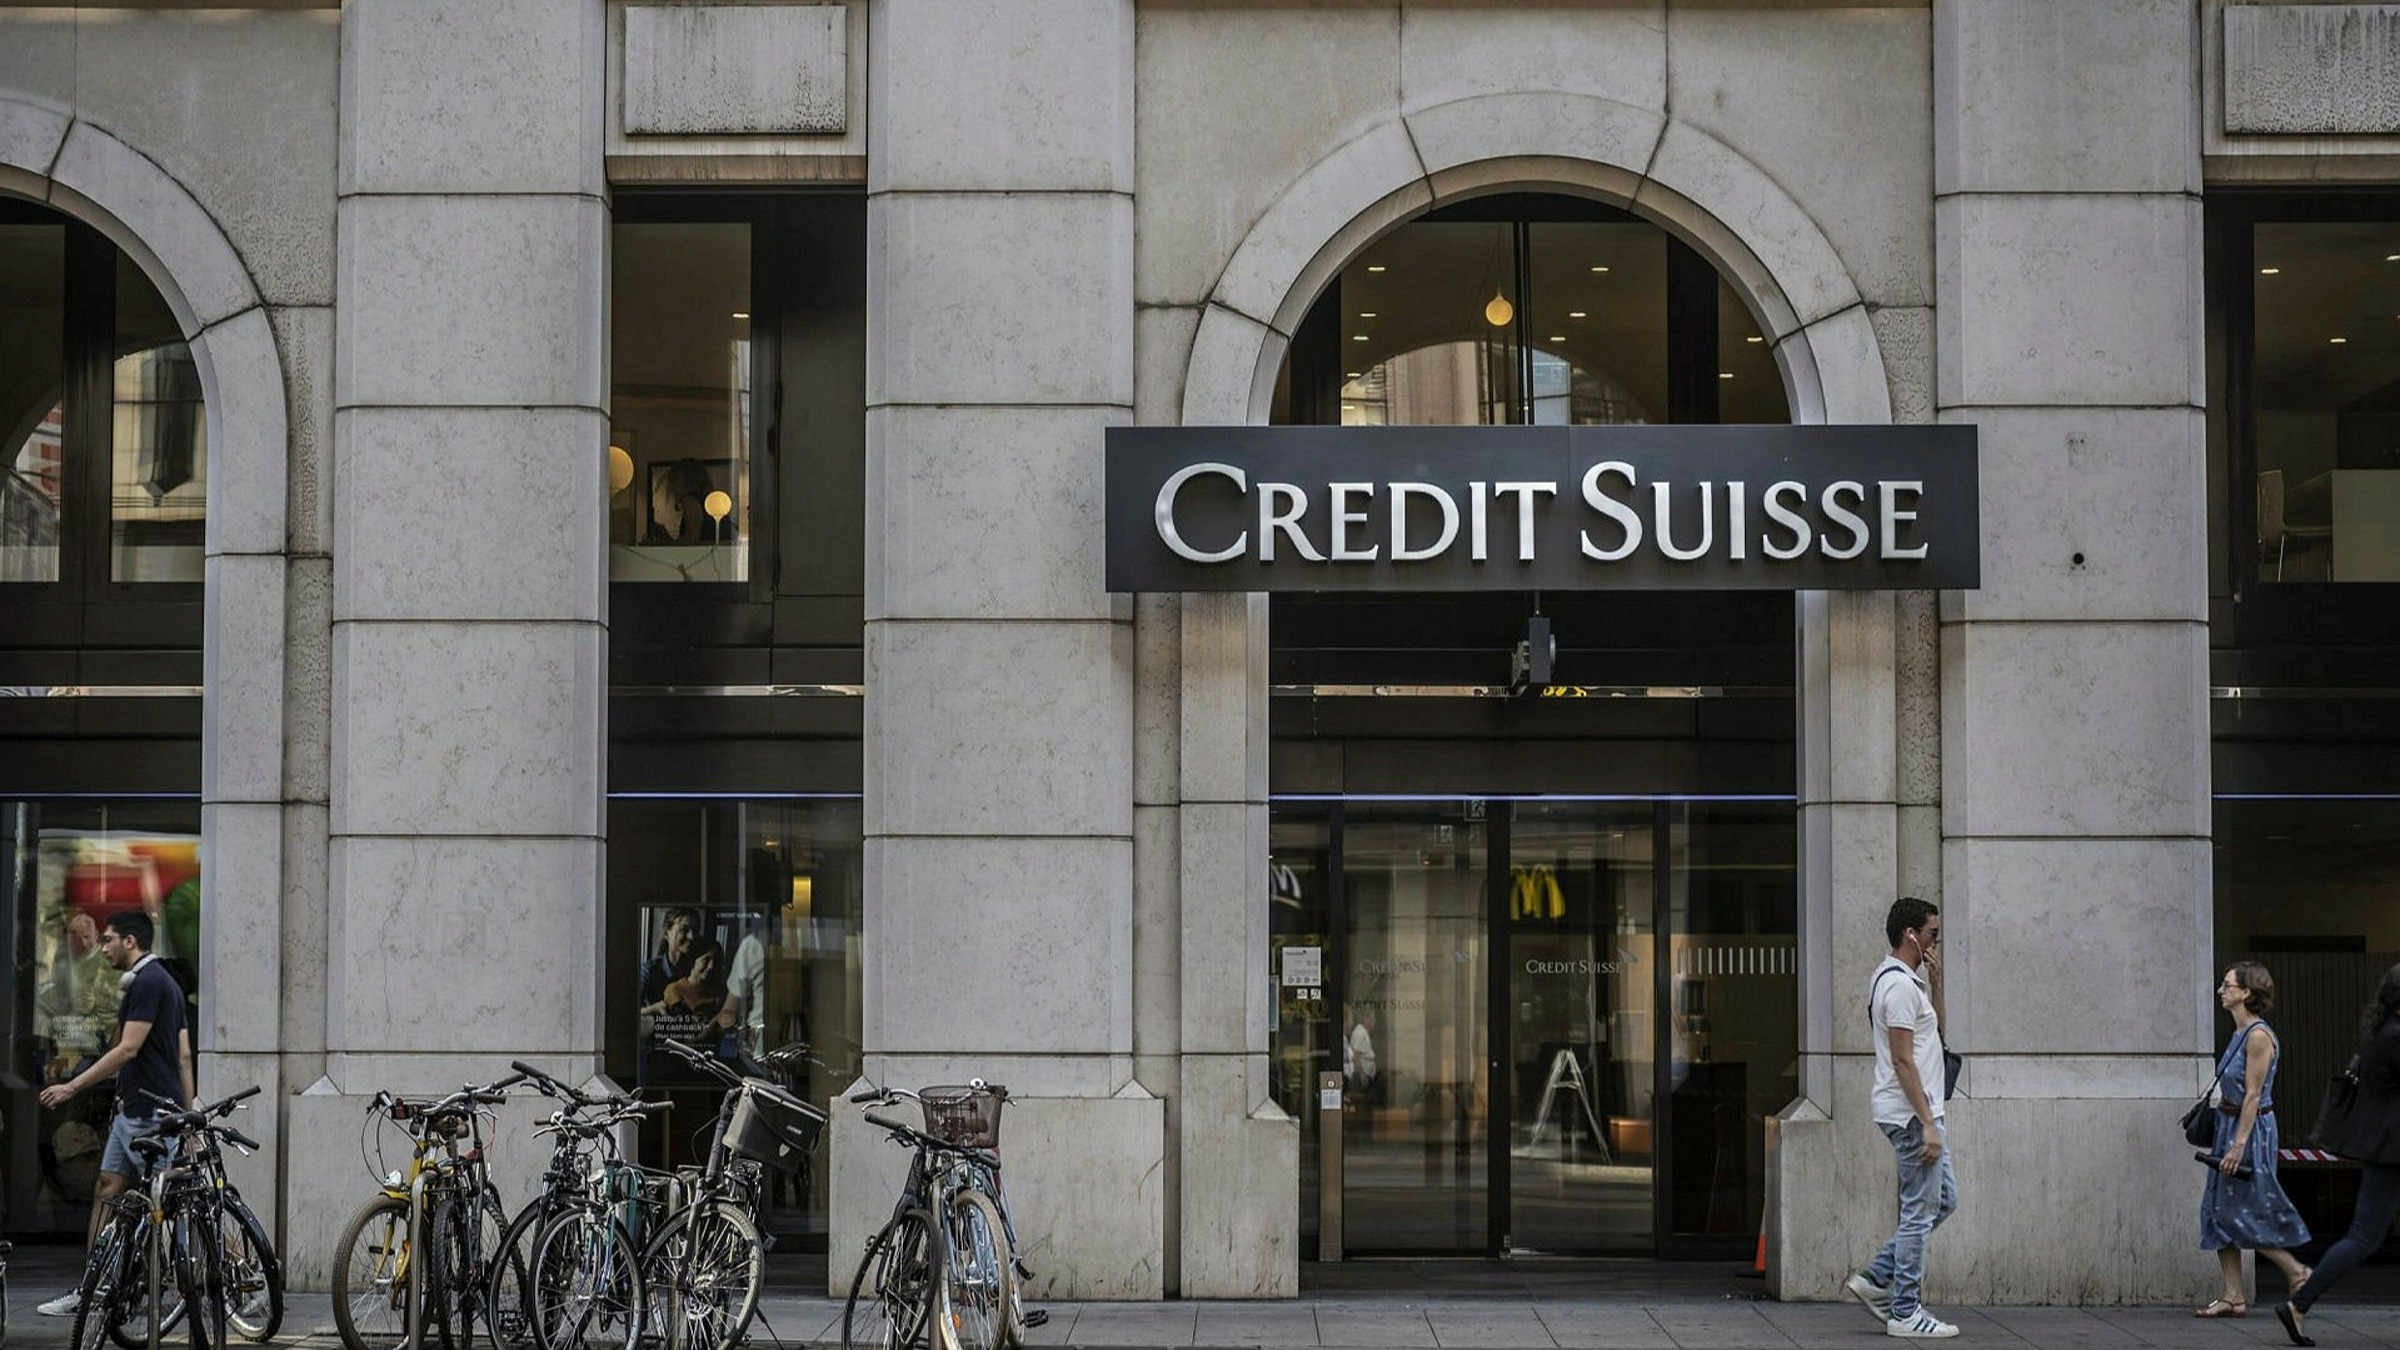 Ngân hàng Credit Suisse liên tục chịu tổn thất tài chính trong các năm qua trước khi đi tới “bước đường cùng” với khoản vay hơn 50 tỷ USD để duy trì hoạt động. Ảnh: Bloomberg